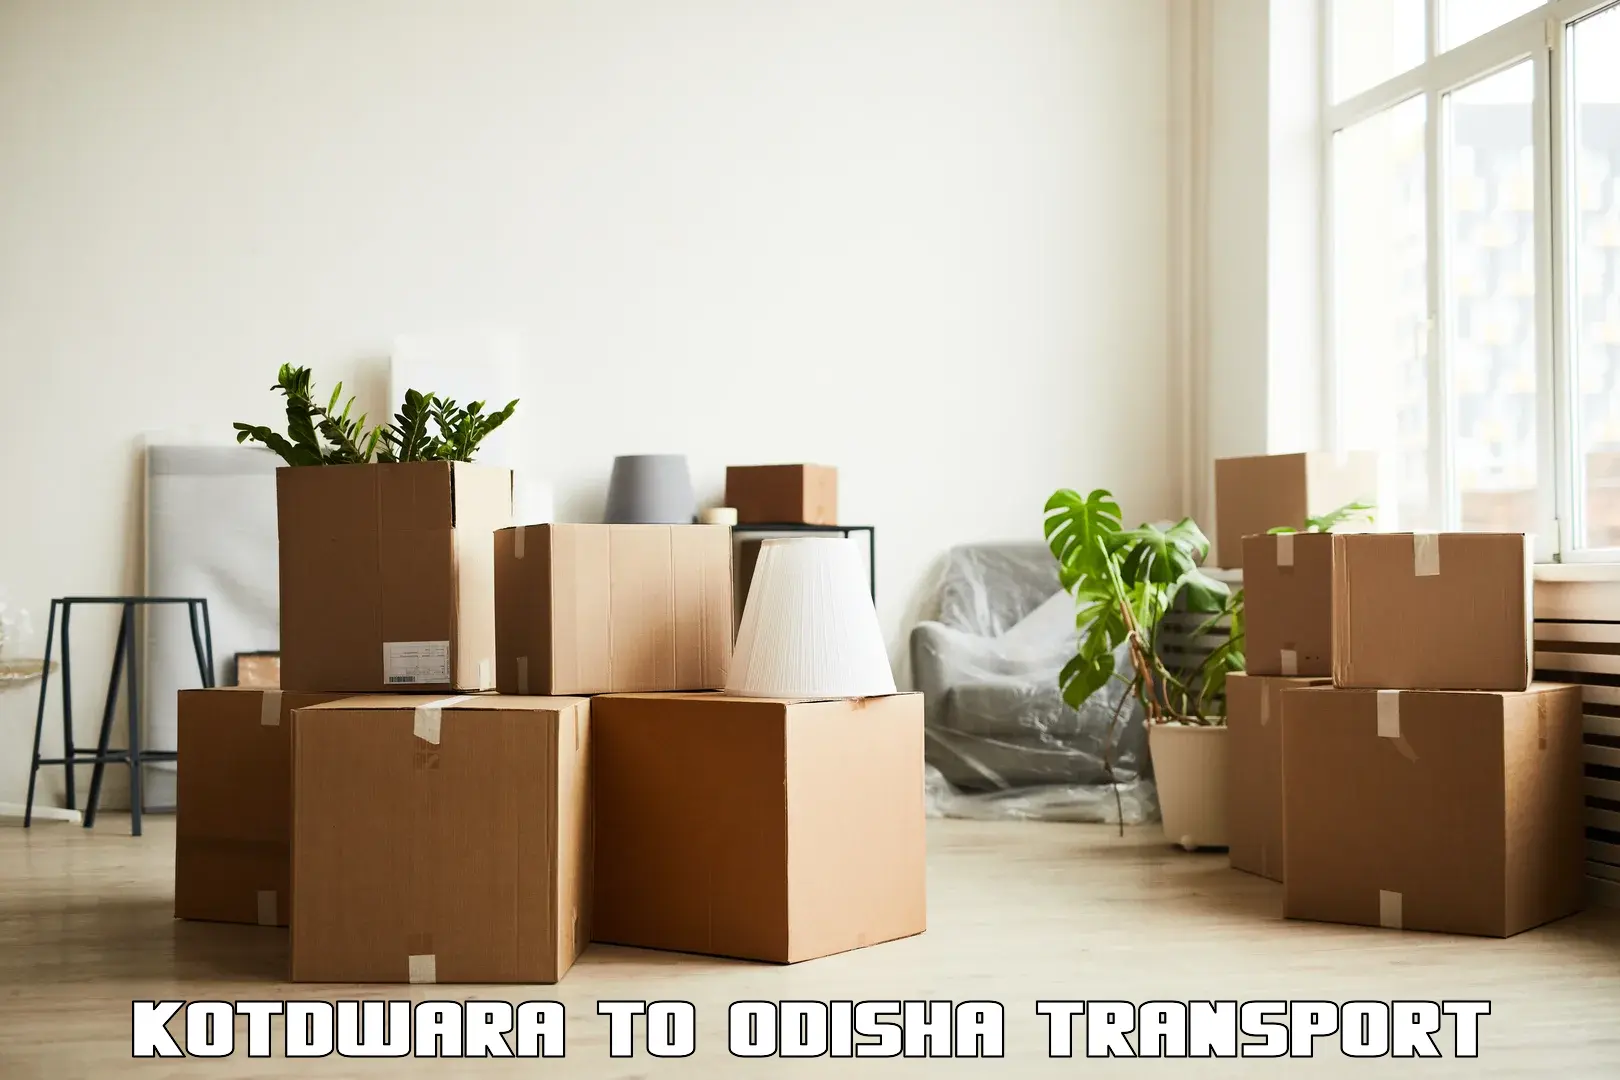 Furniture transport service Kotdwara to Adaspur